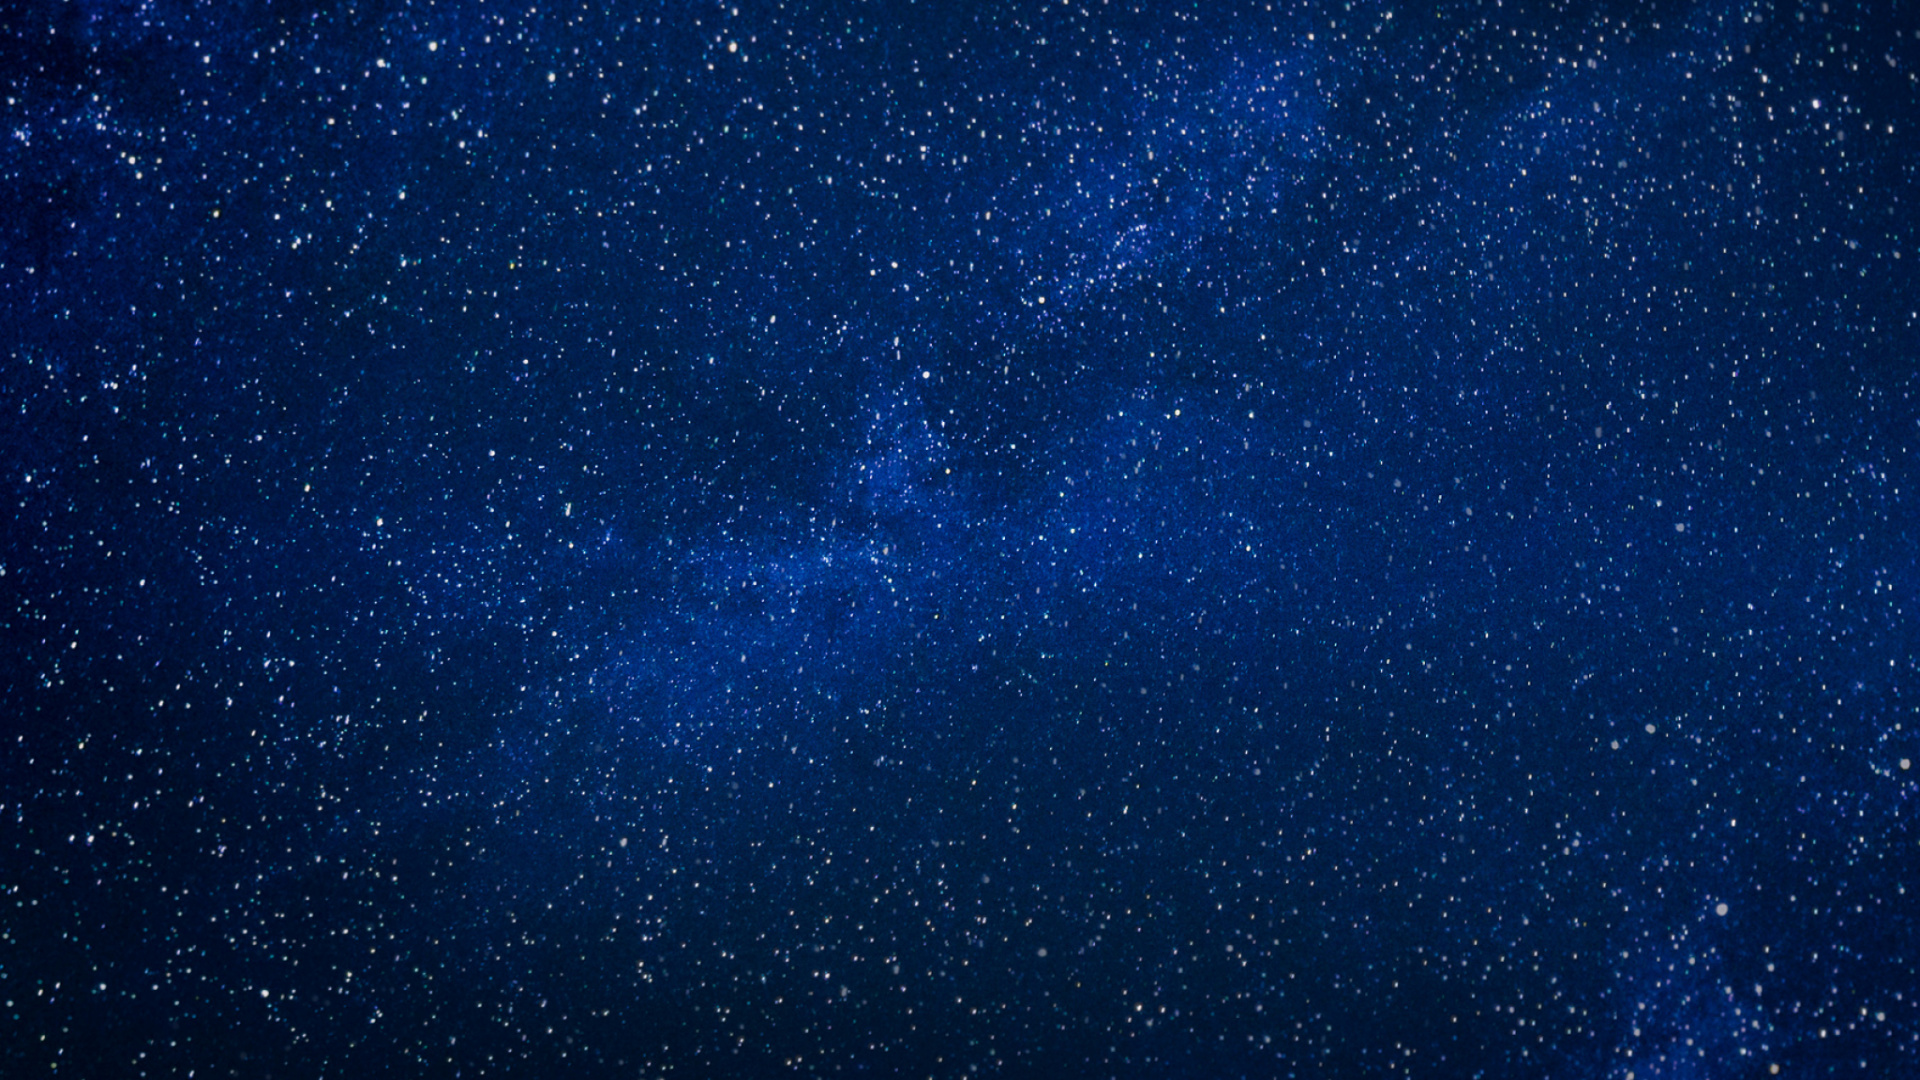 Cielo Estrellado Azul y Blanco. Wallpaper in 1920x1080 Resolution